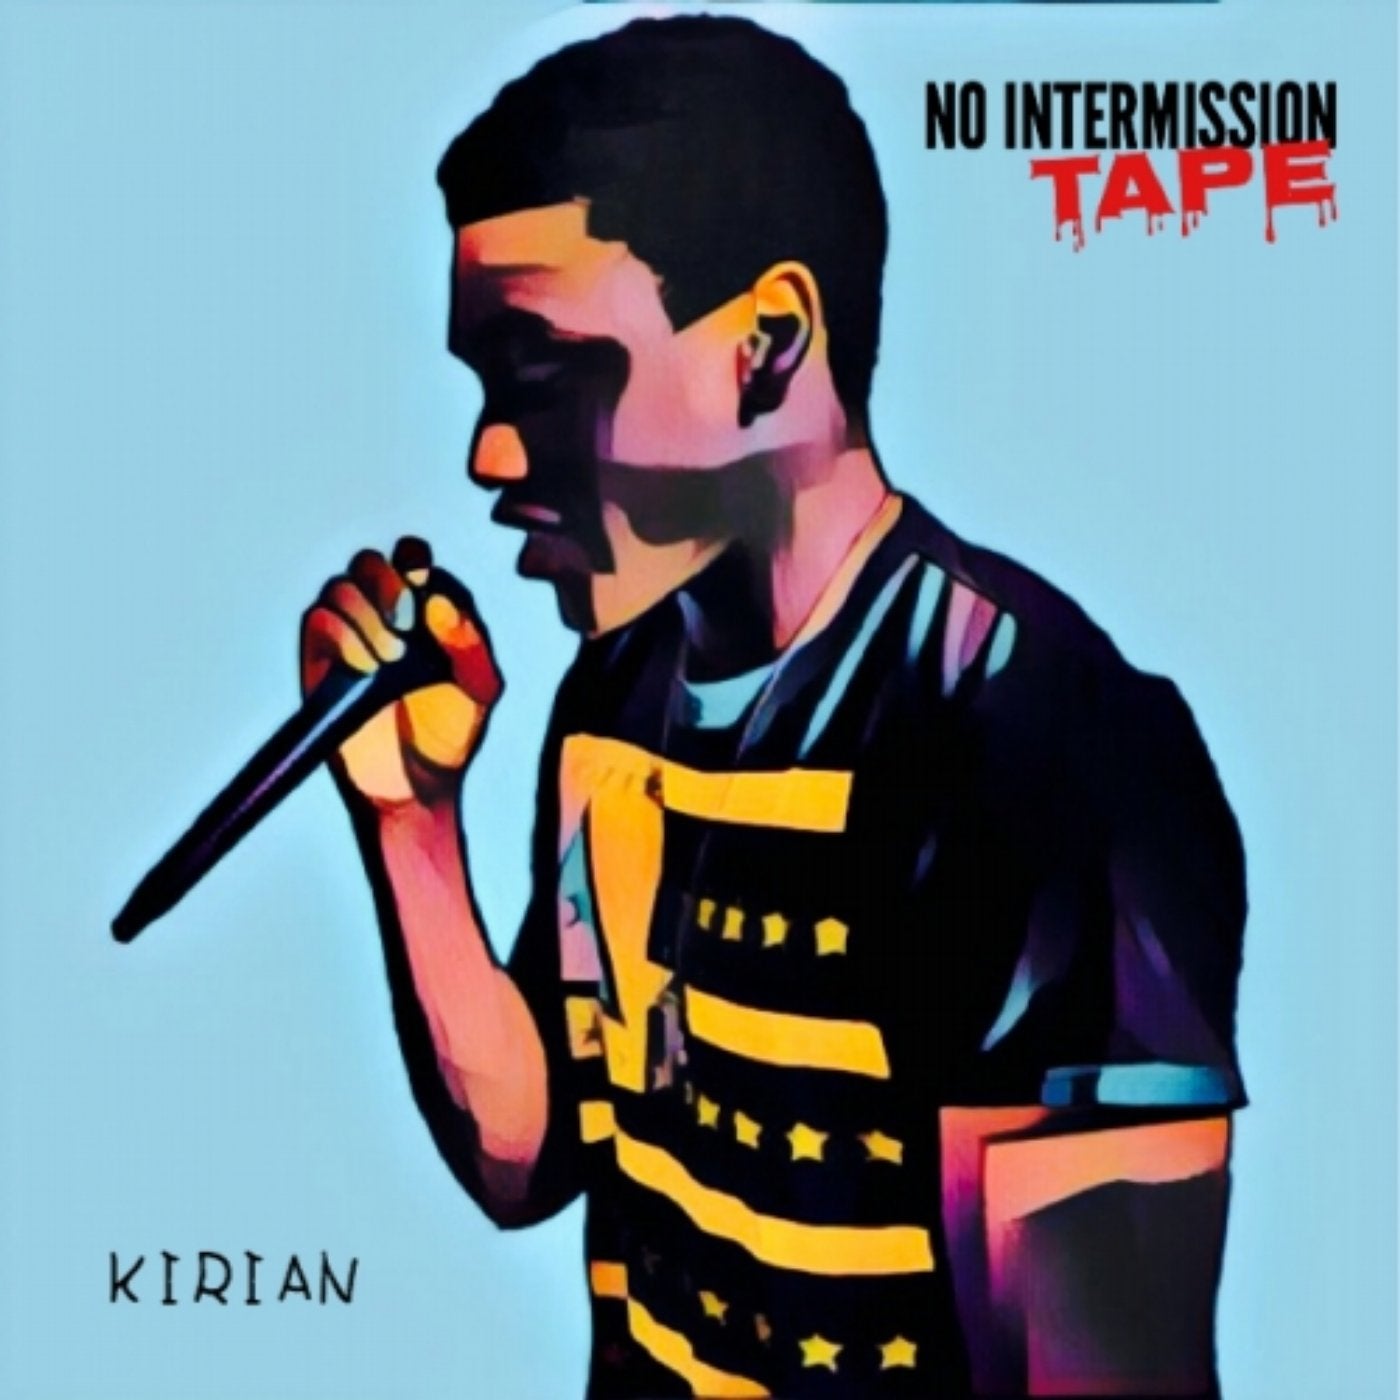 No Intermission Tape